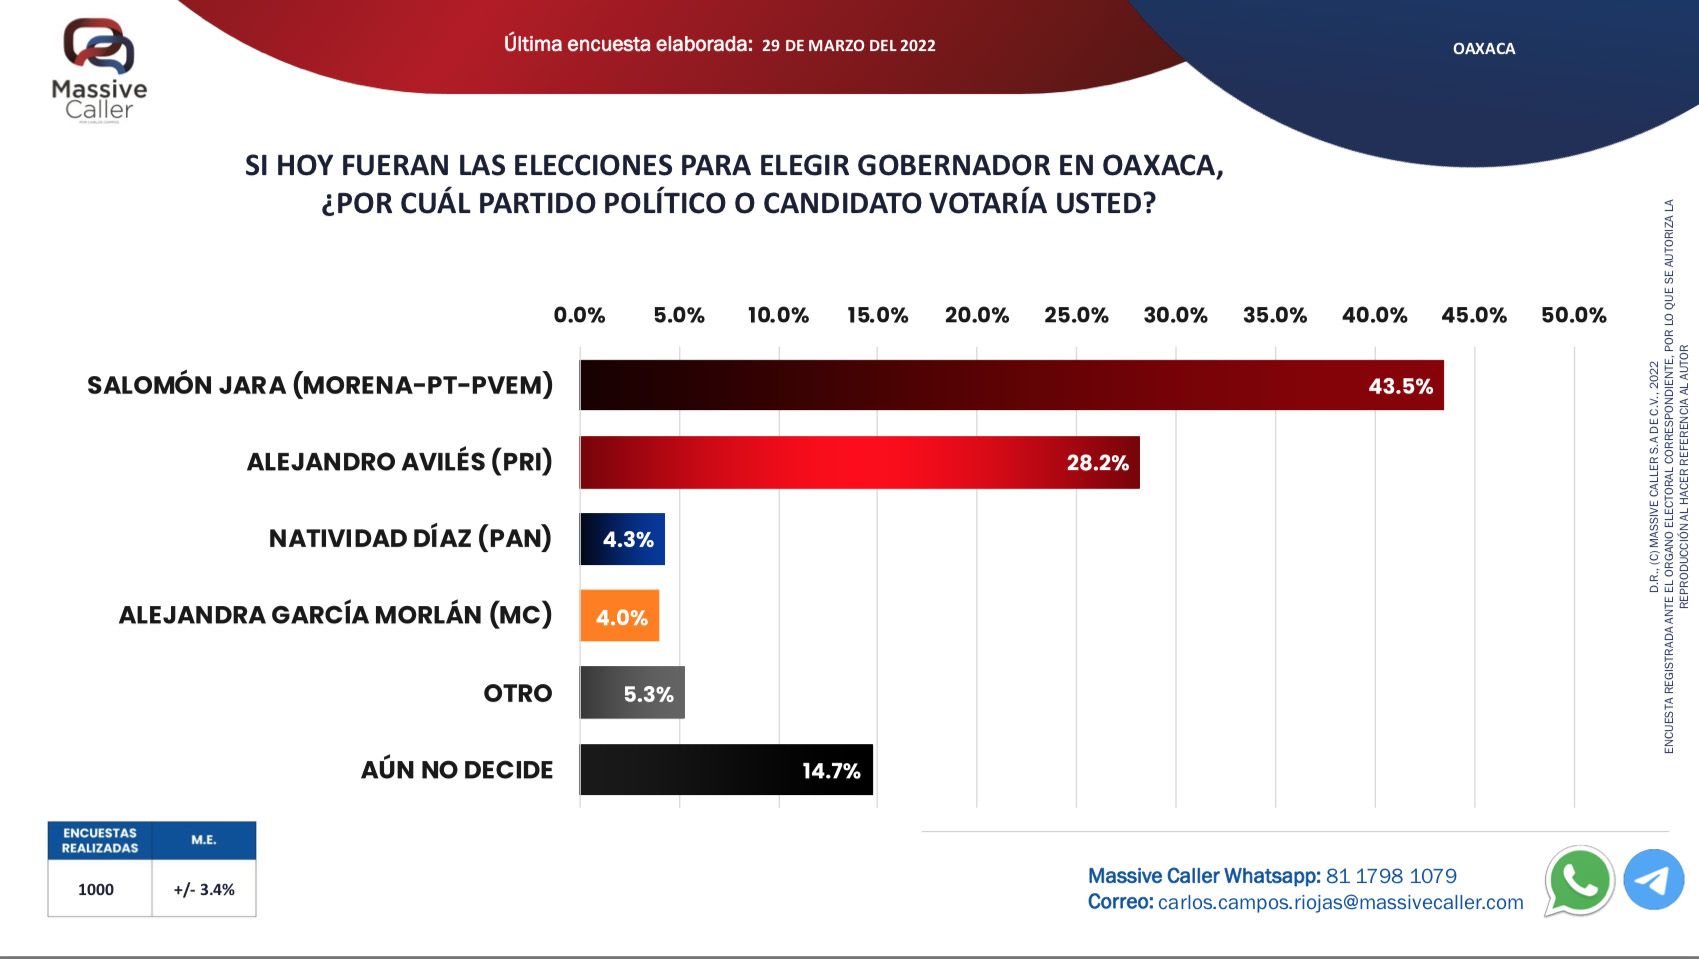 ▶ A la baja, candidato de Morena en las preferencias electorales